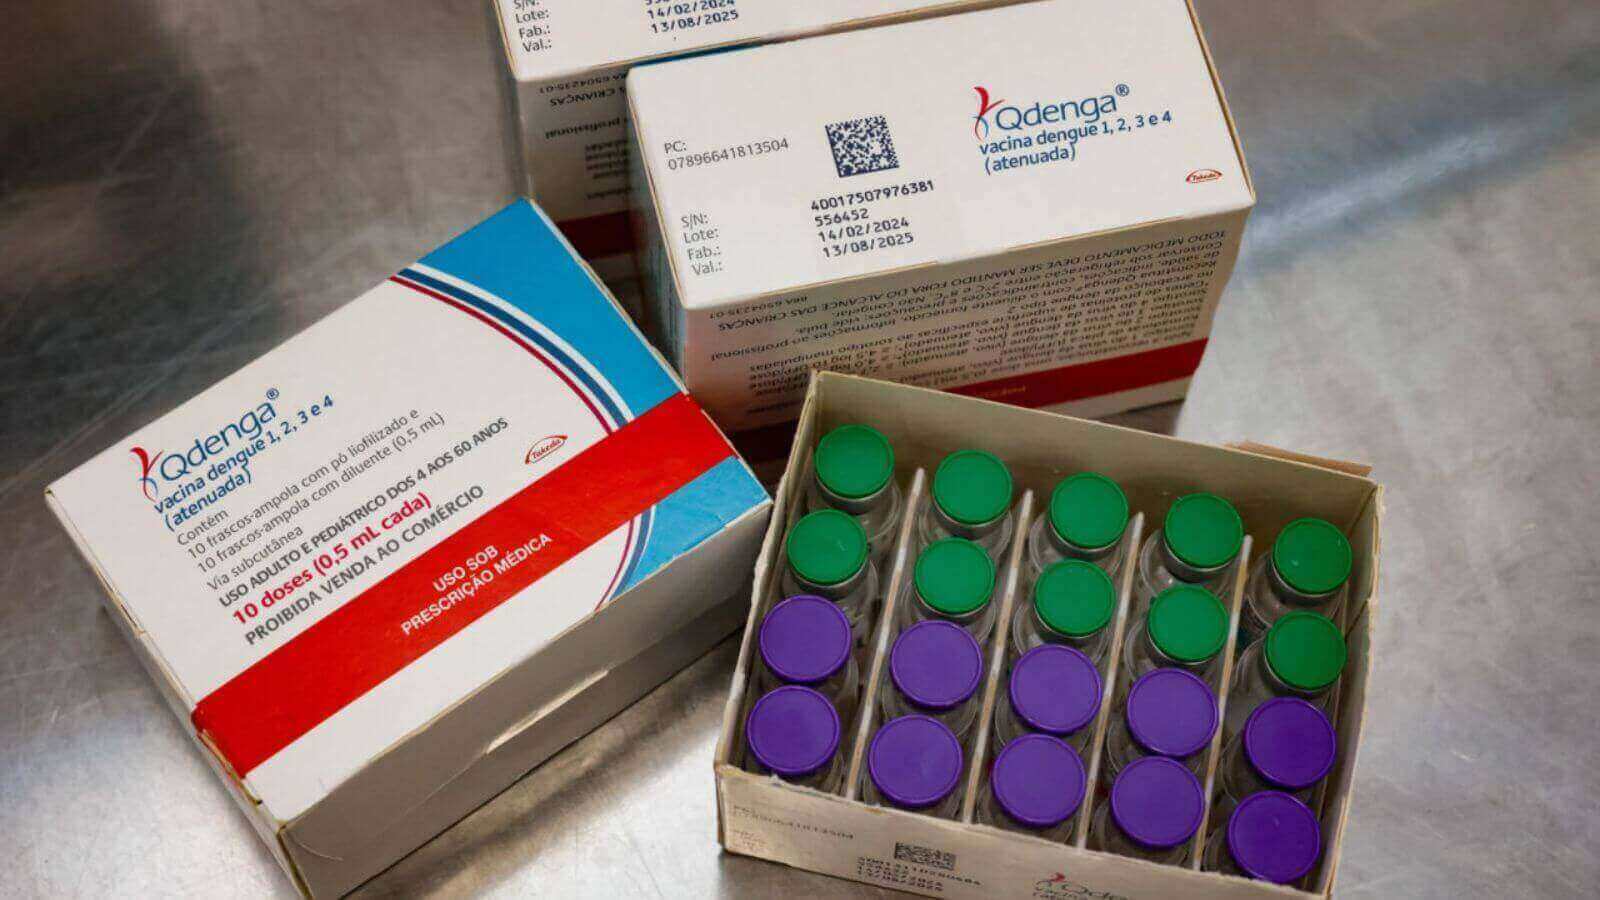 Caixas de vacina contra dengue em UBS de Jundiaí